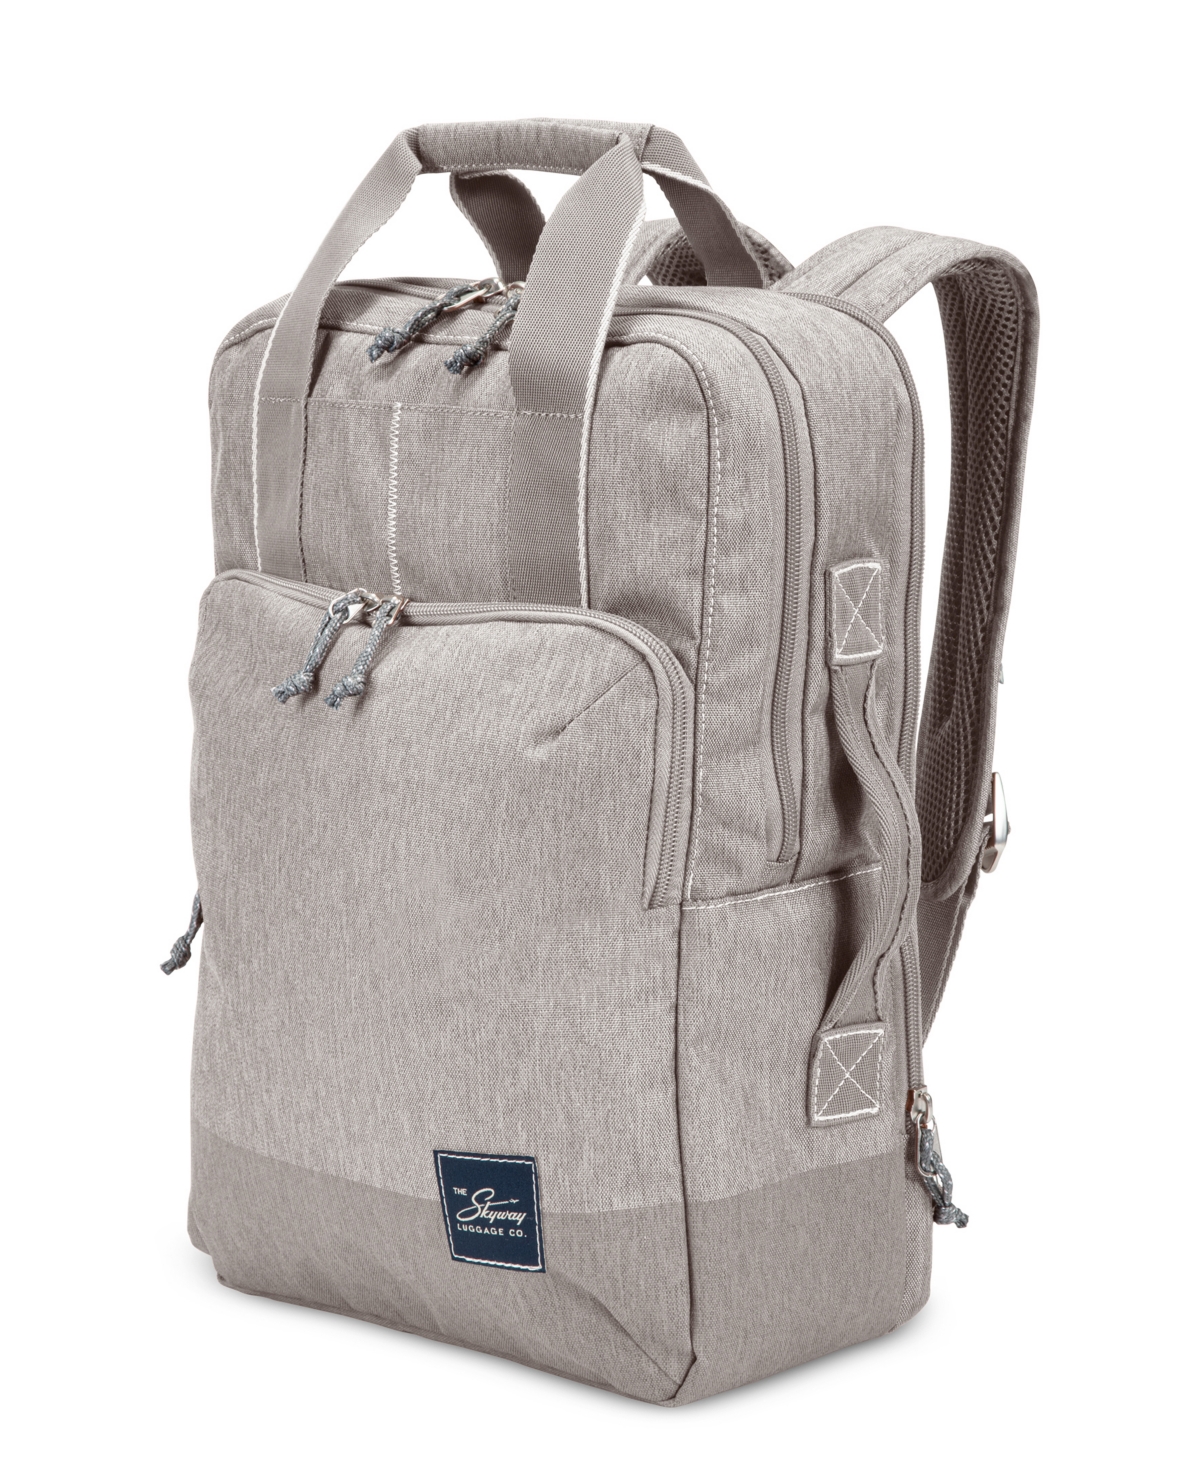 Skyway Rainier Deluxe Backpack, 17" In Zion Gray